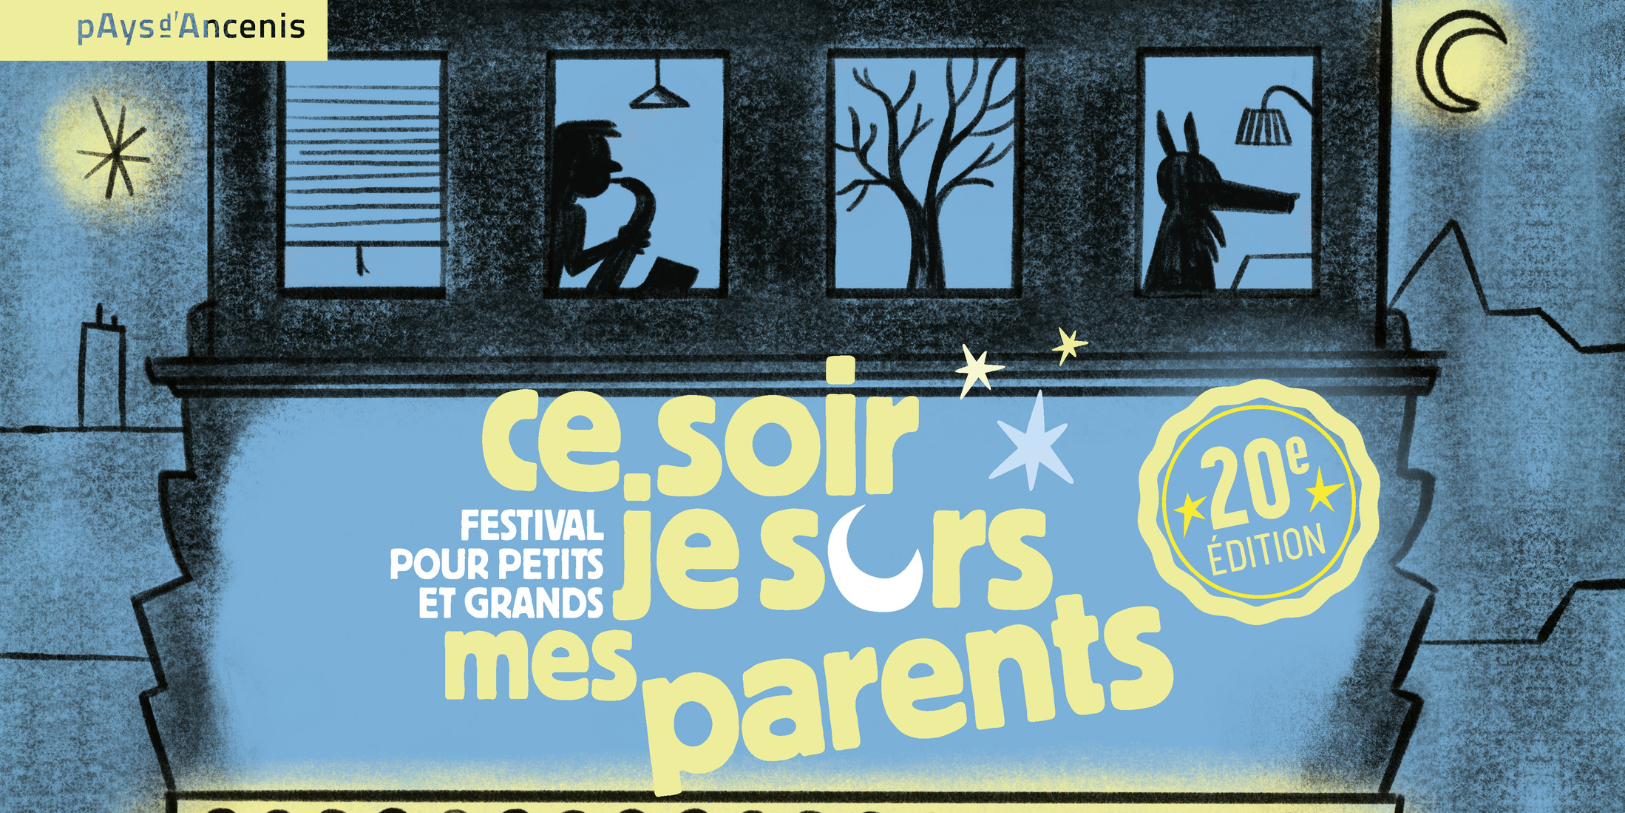 Festival : Ce soir je sors mes parents // En famille // Pays d'Ancenis